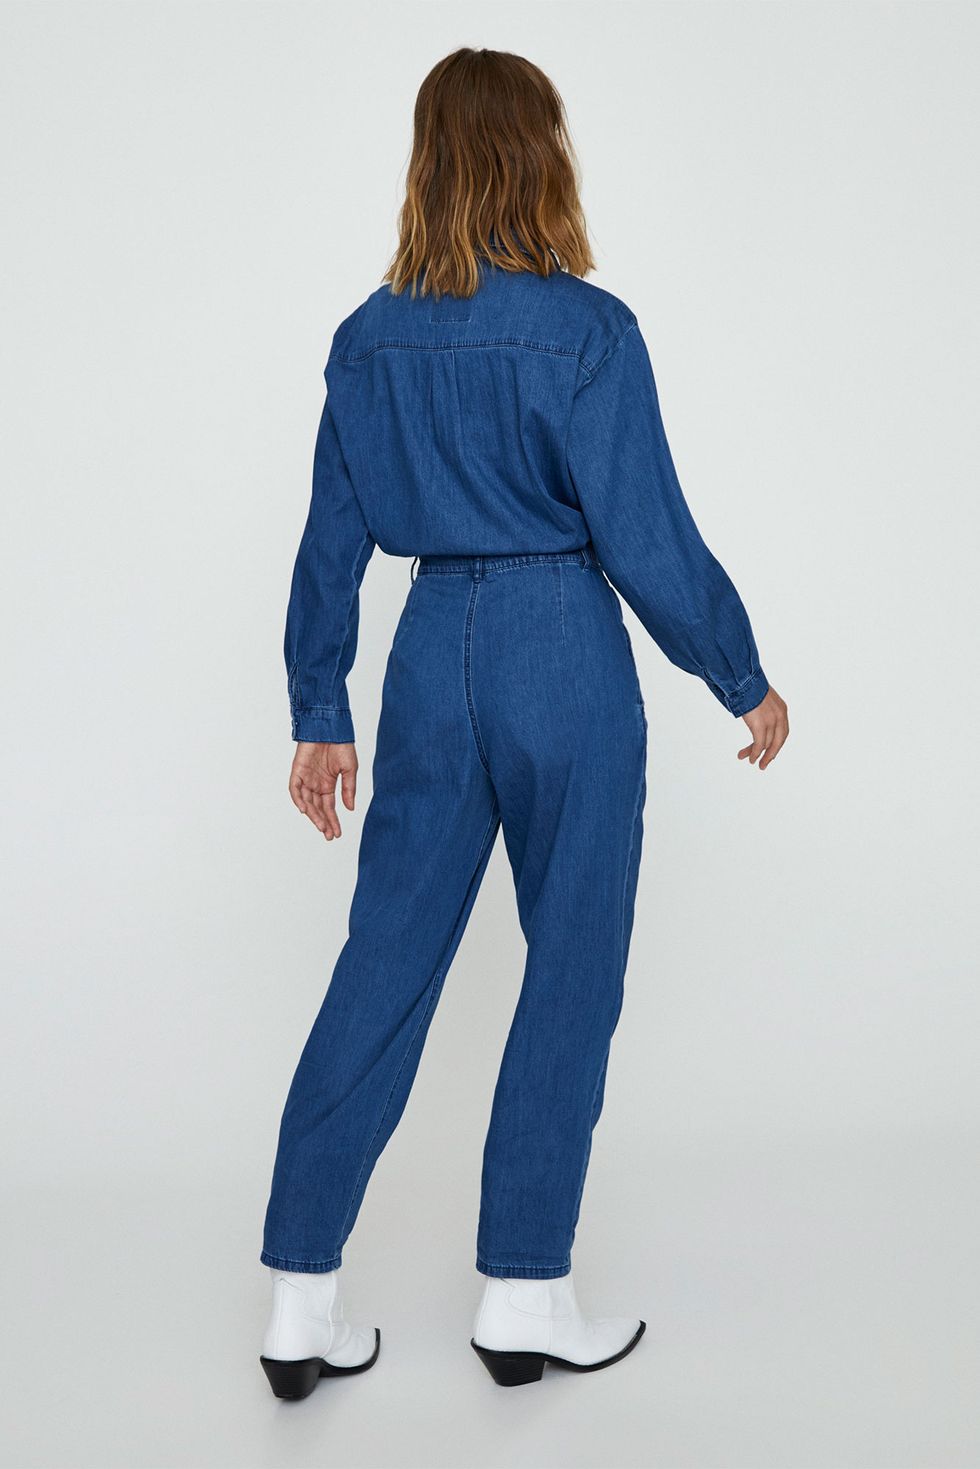 Clothing, Blue, Standing, Denim, Jeans, Electric blue, Cobalt blue, Waist, Sleeve, Shoulder, 